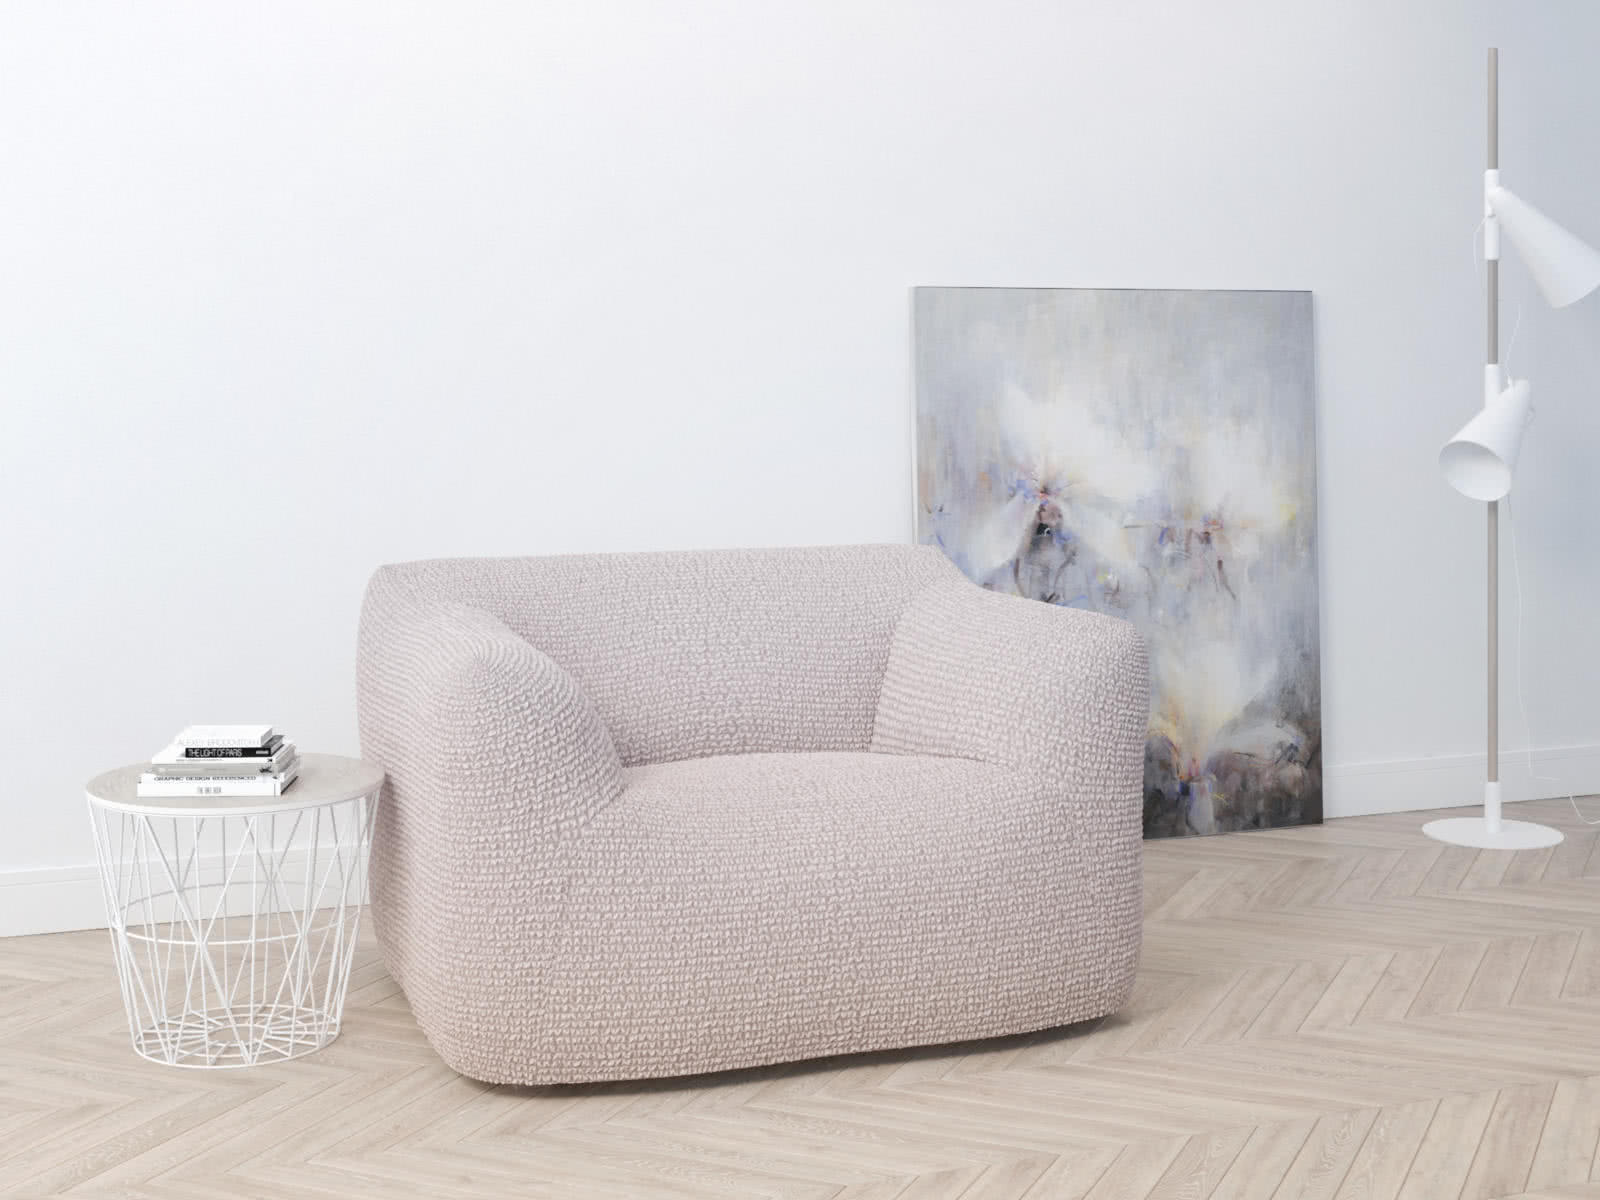 Купить Чехол на кресло Dreamline 70-110 см, бледно-розовый бледно-розовый недорого в интернет-магазине